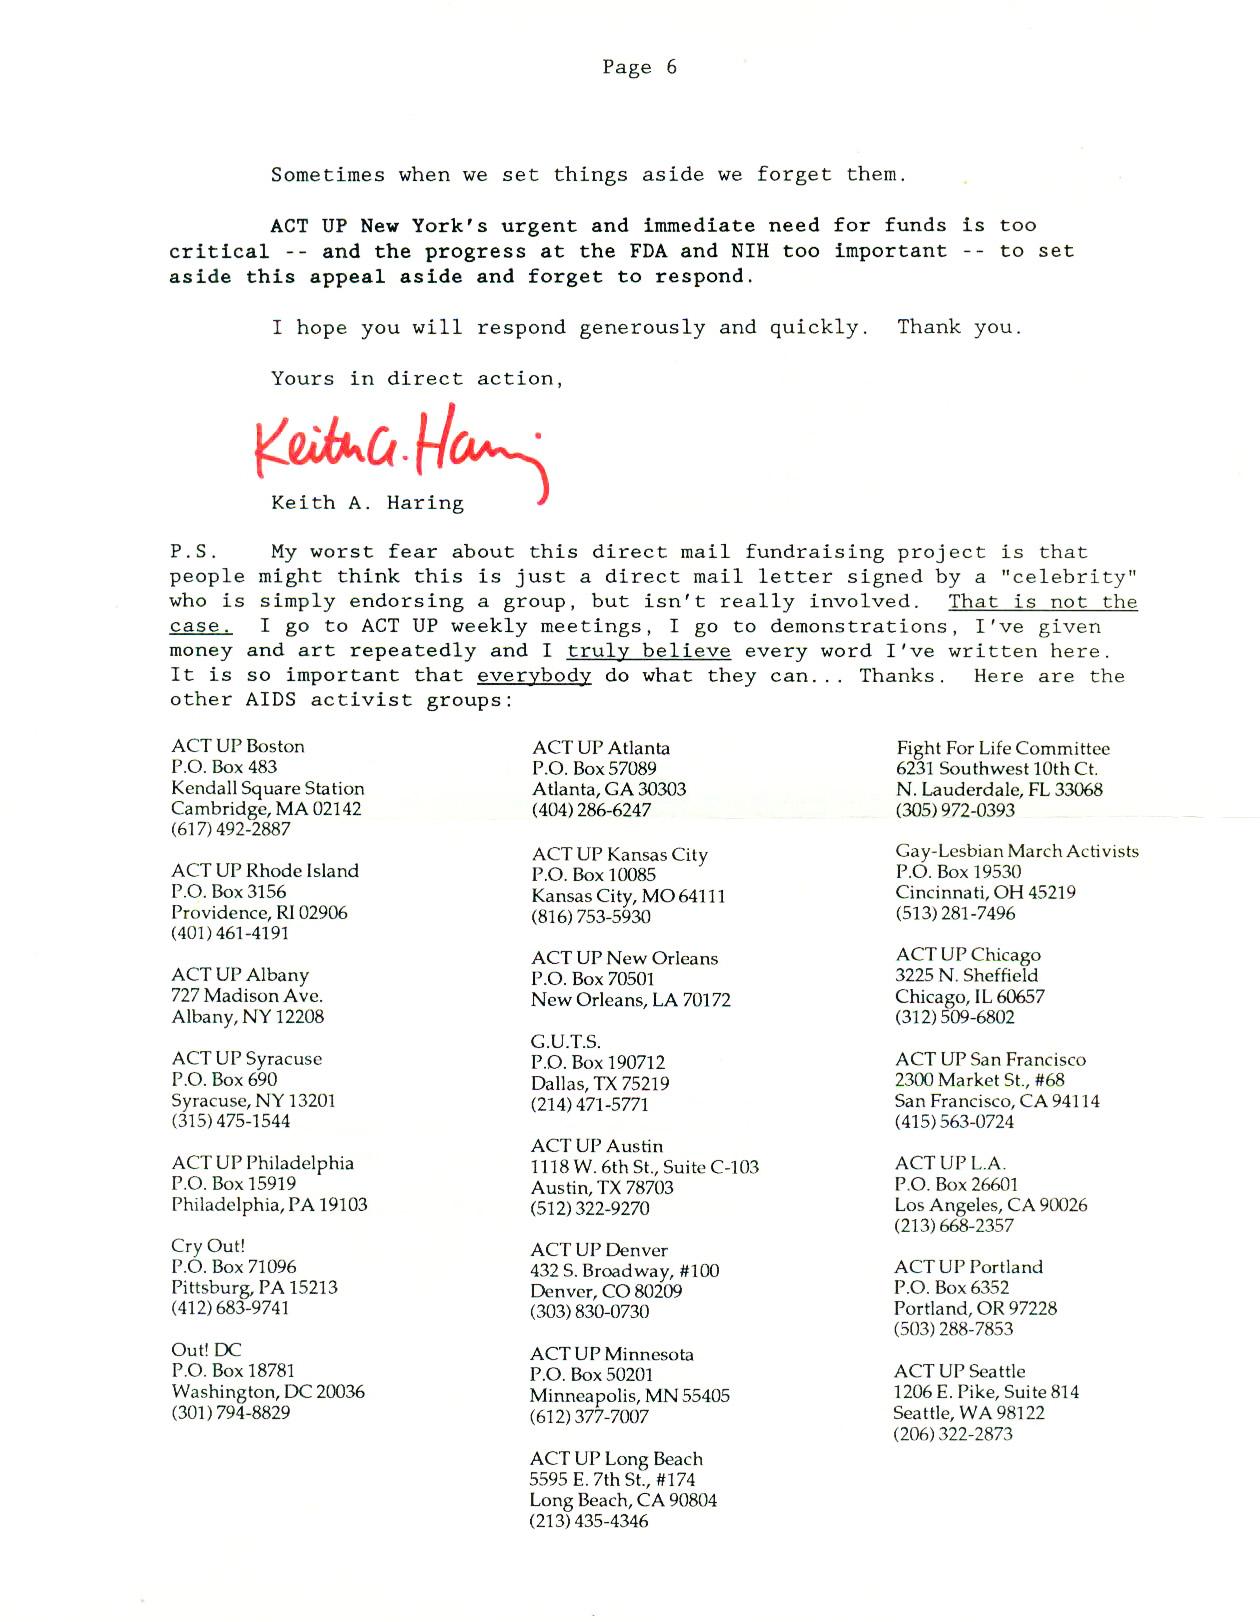 Keith Haring Act Up 1989 mailer (Keith Haring activist) 2